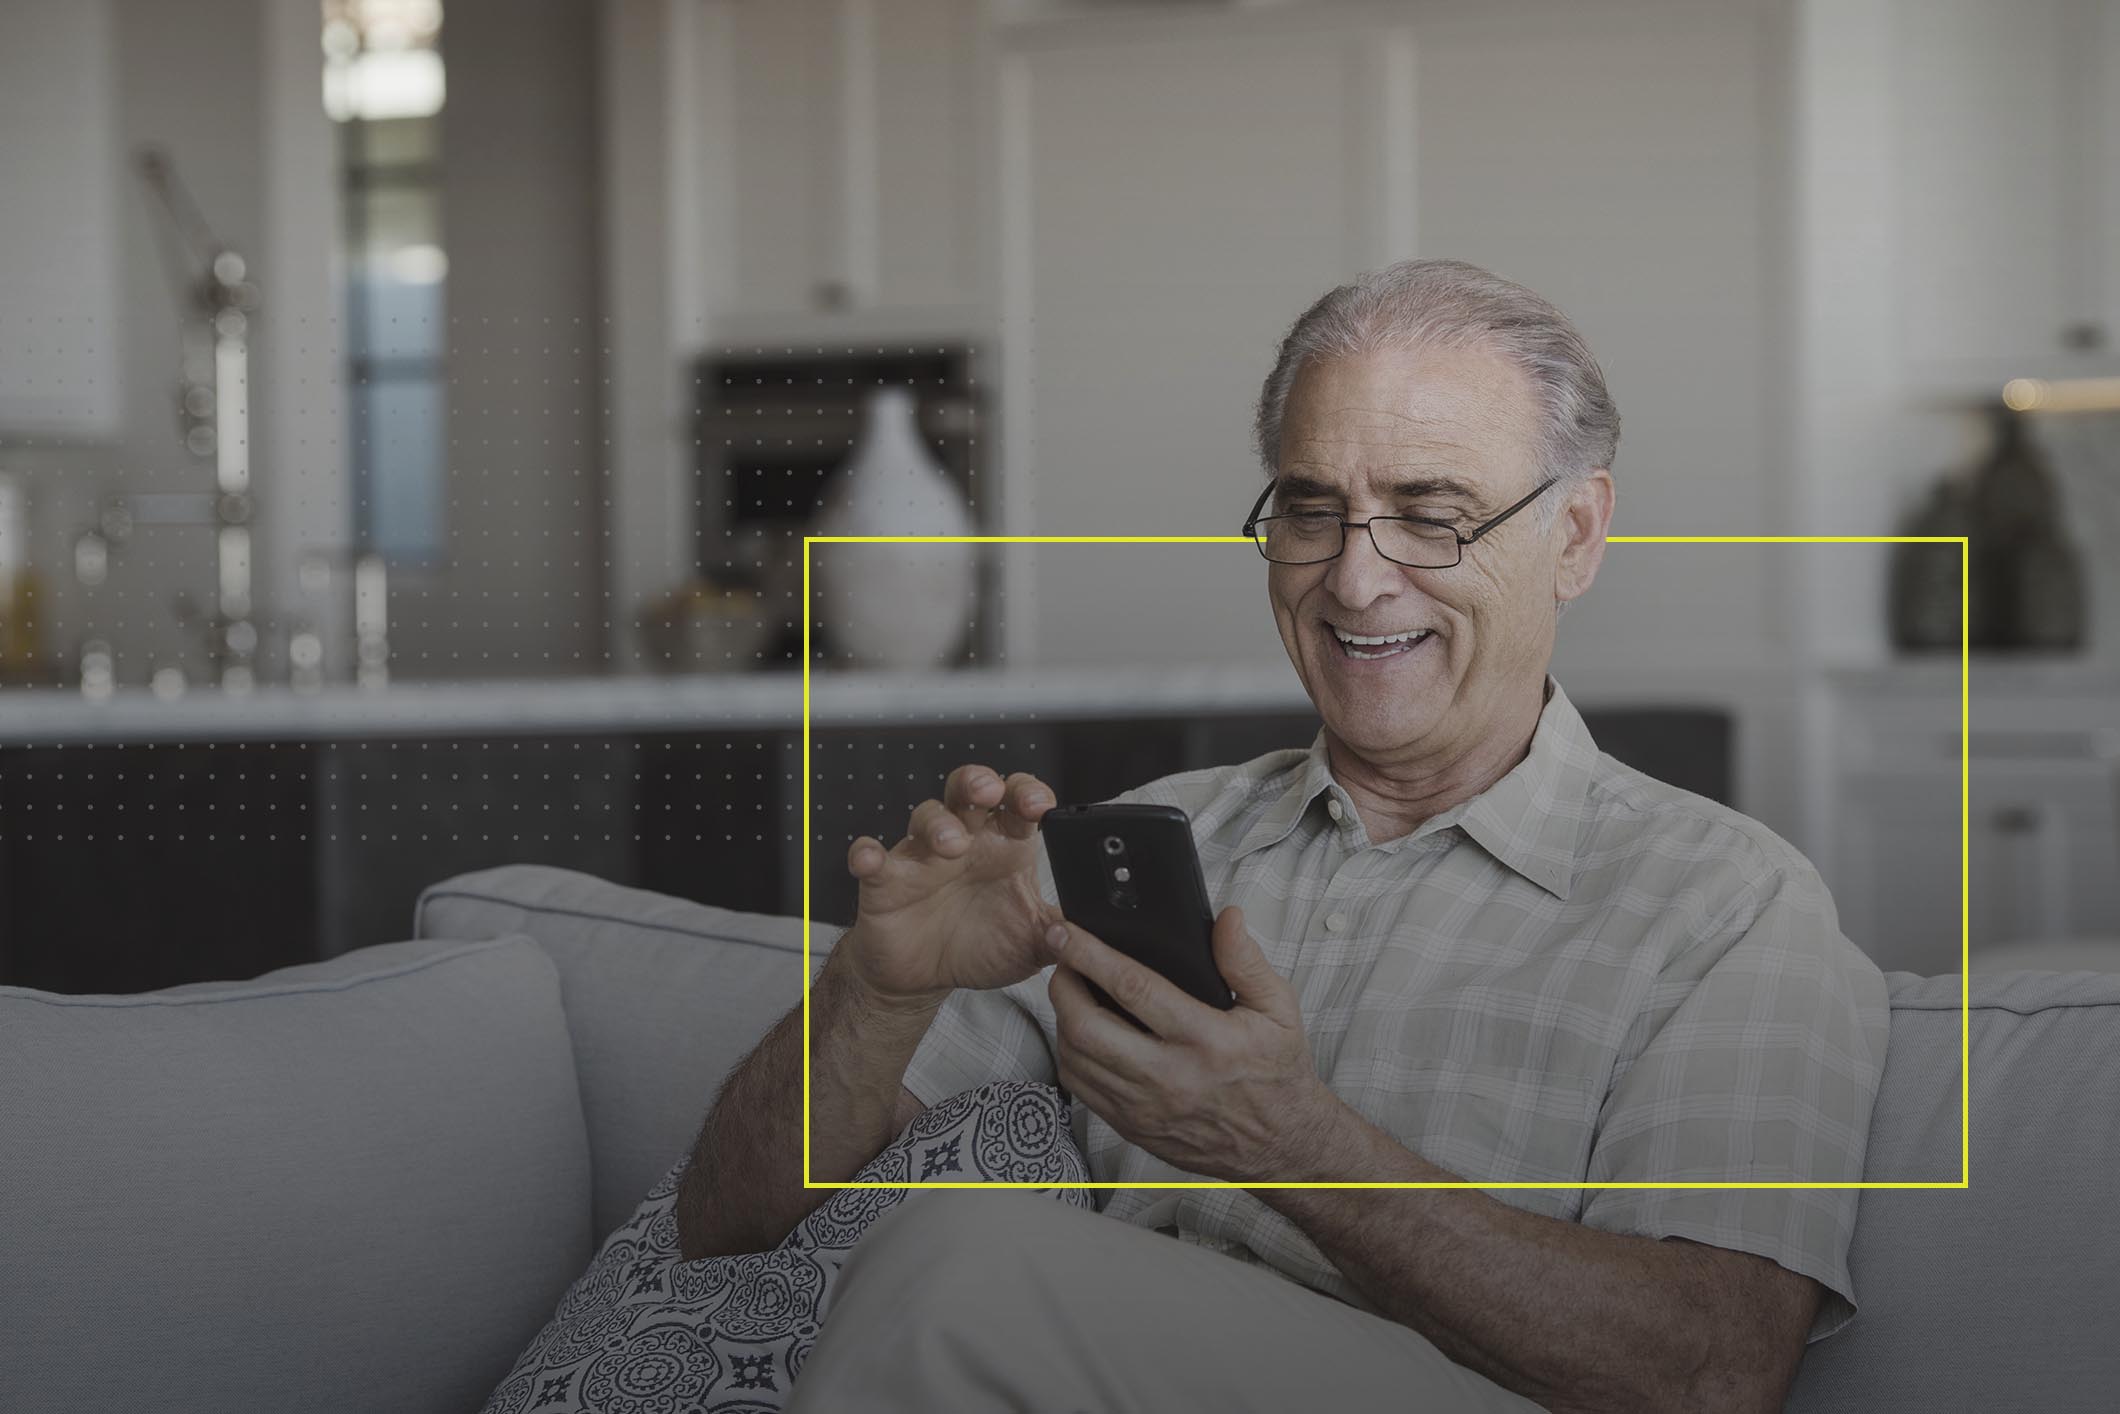 Una persona, hombre adulto mayor, revisando su teléfono inteligente sentado en un sillón de la sala de su casa.